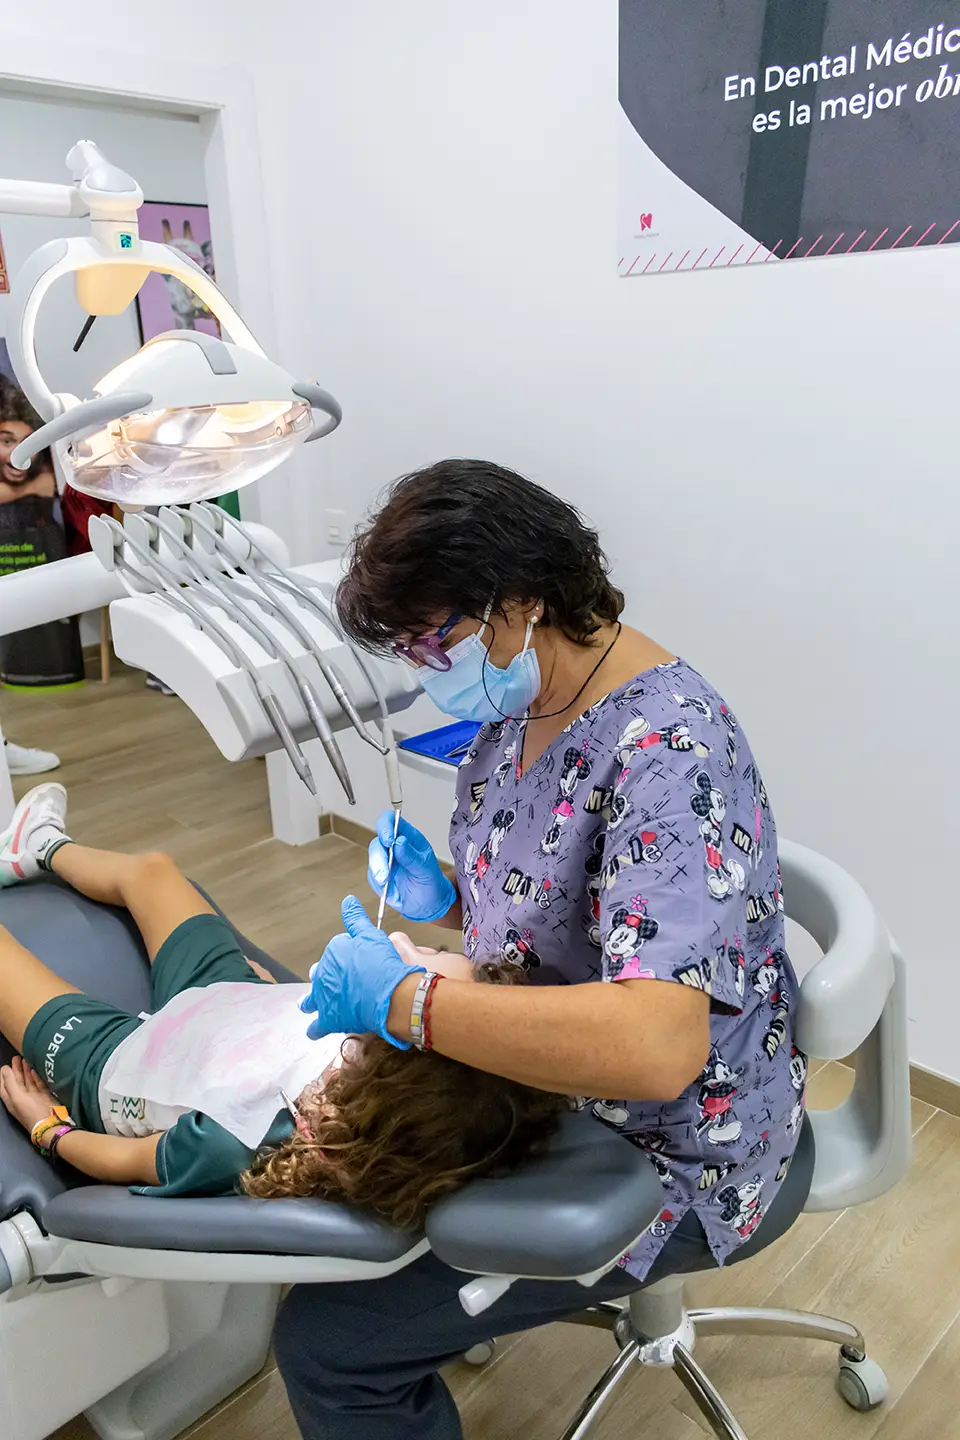 Odontopediatría en Dental Médica